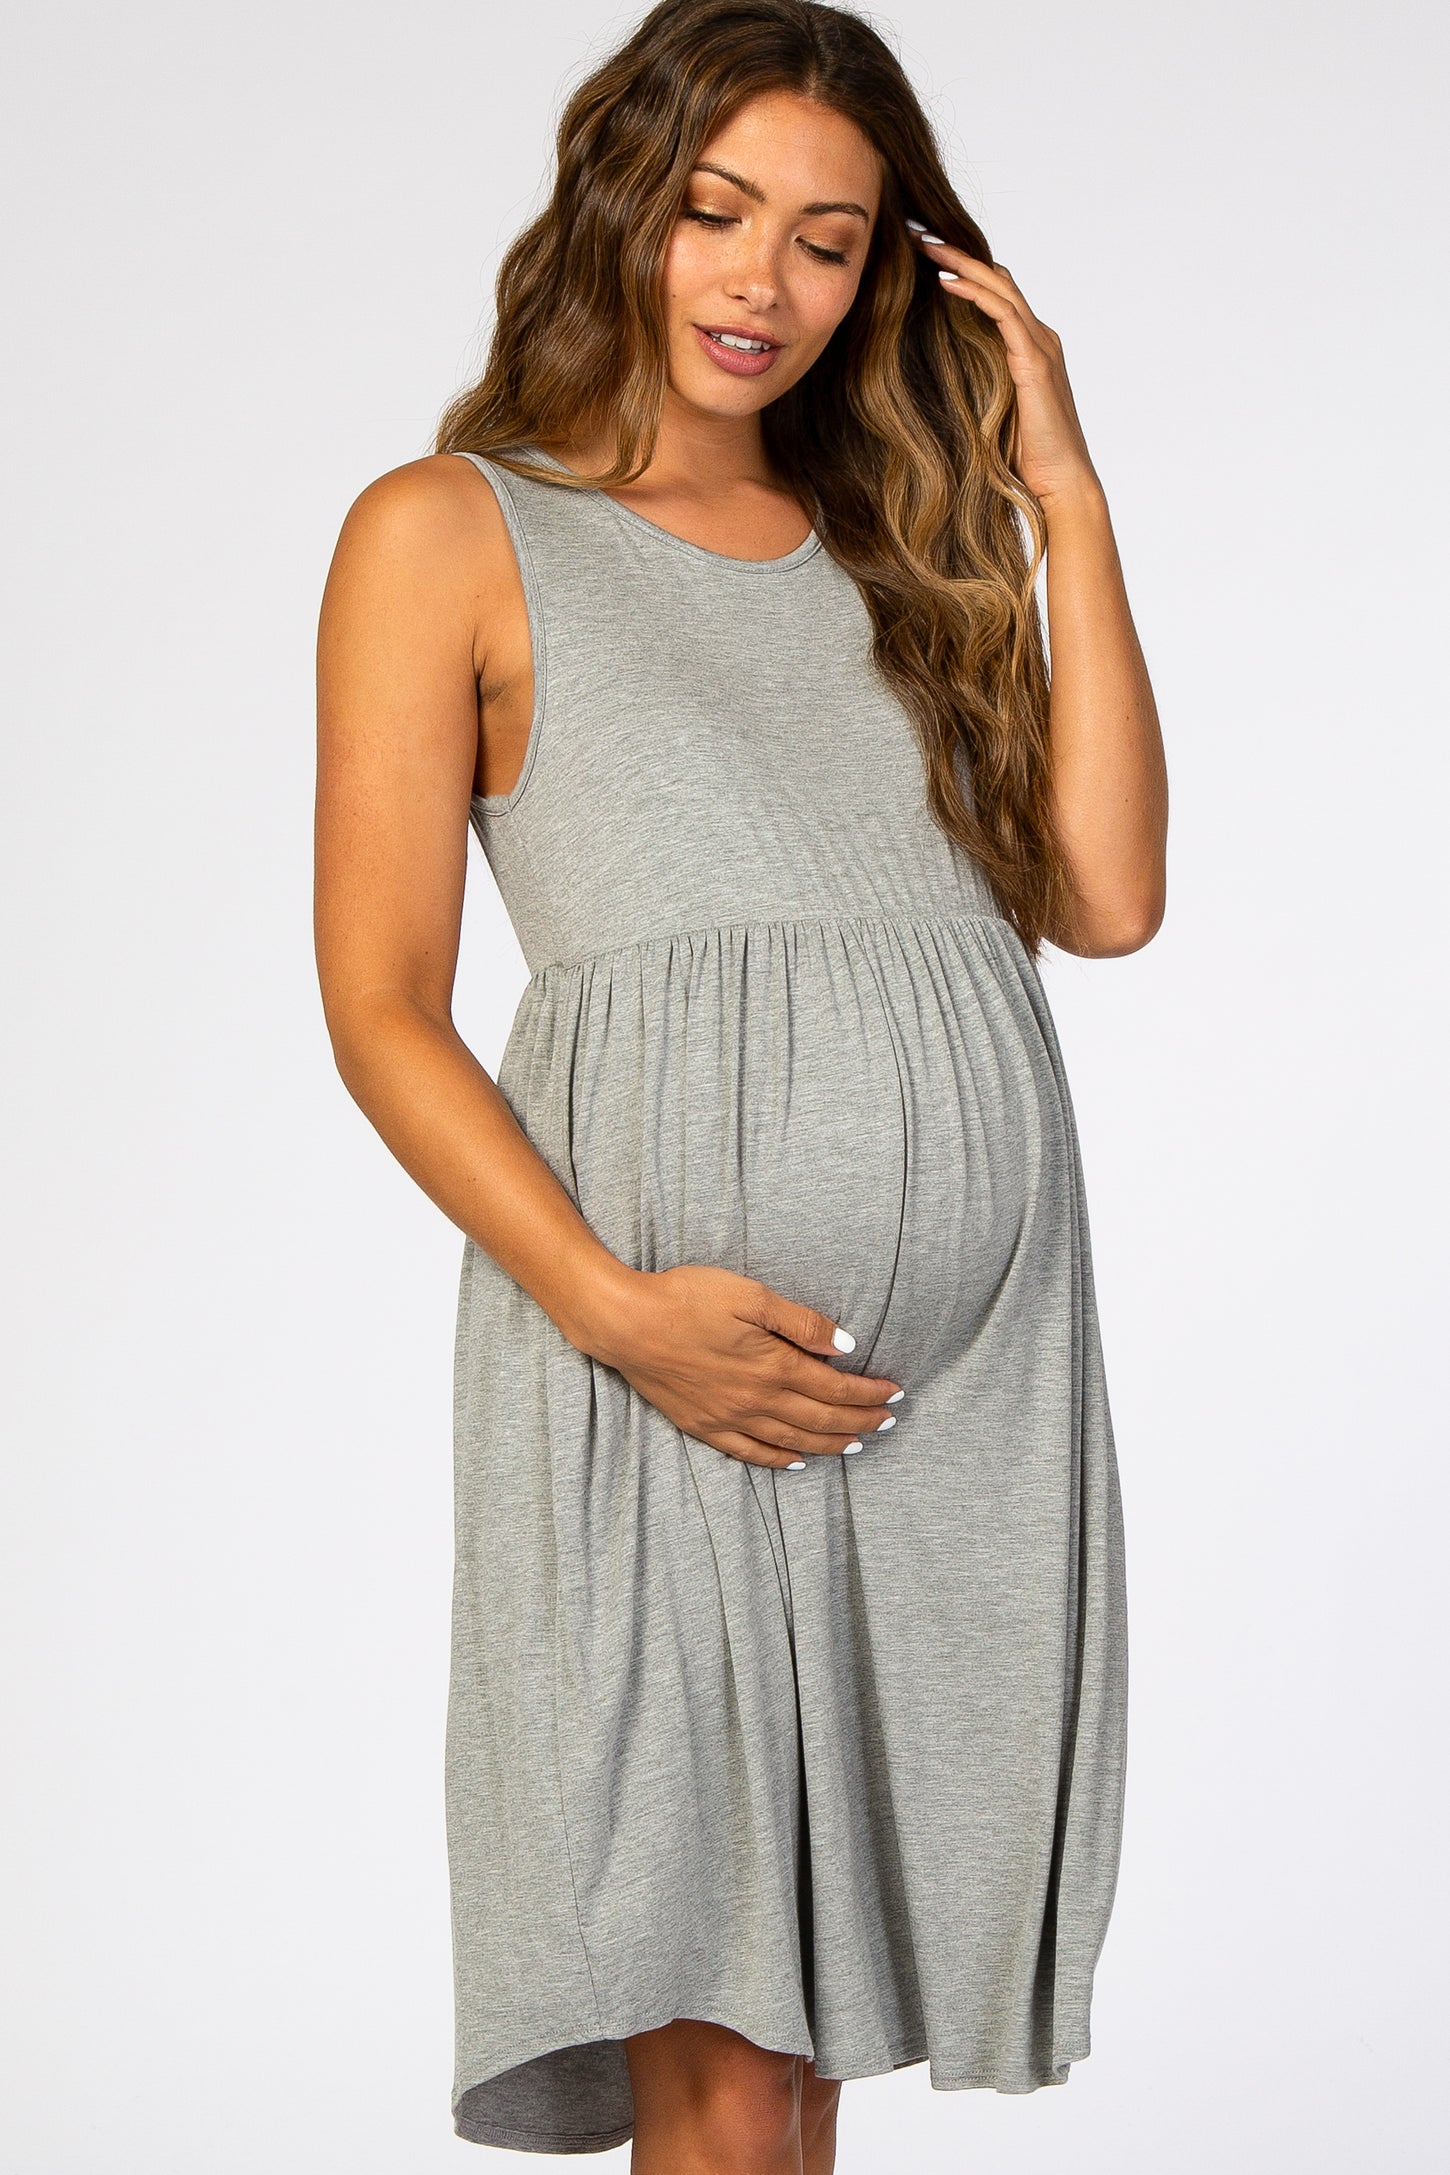 Heather Grey Sleeveless Maternity Dress– PinkBlush